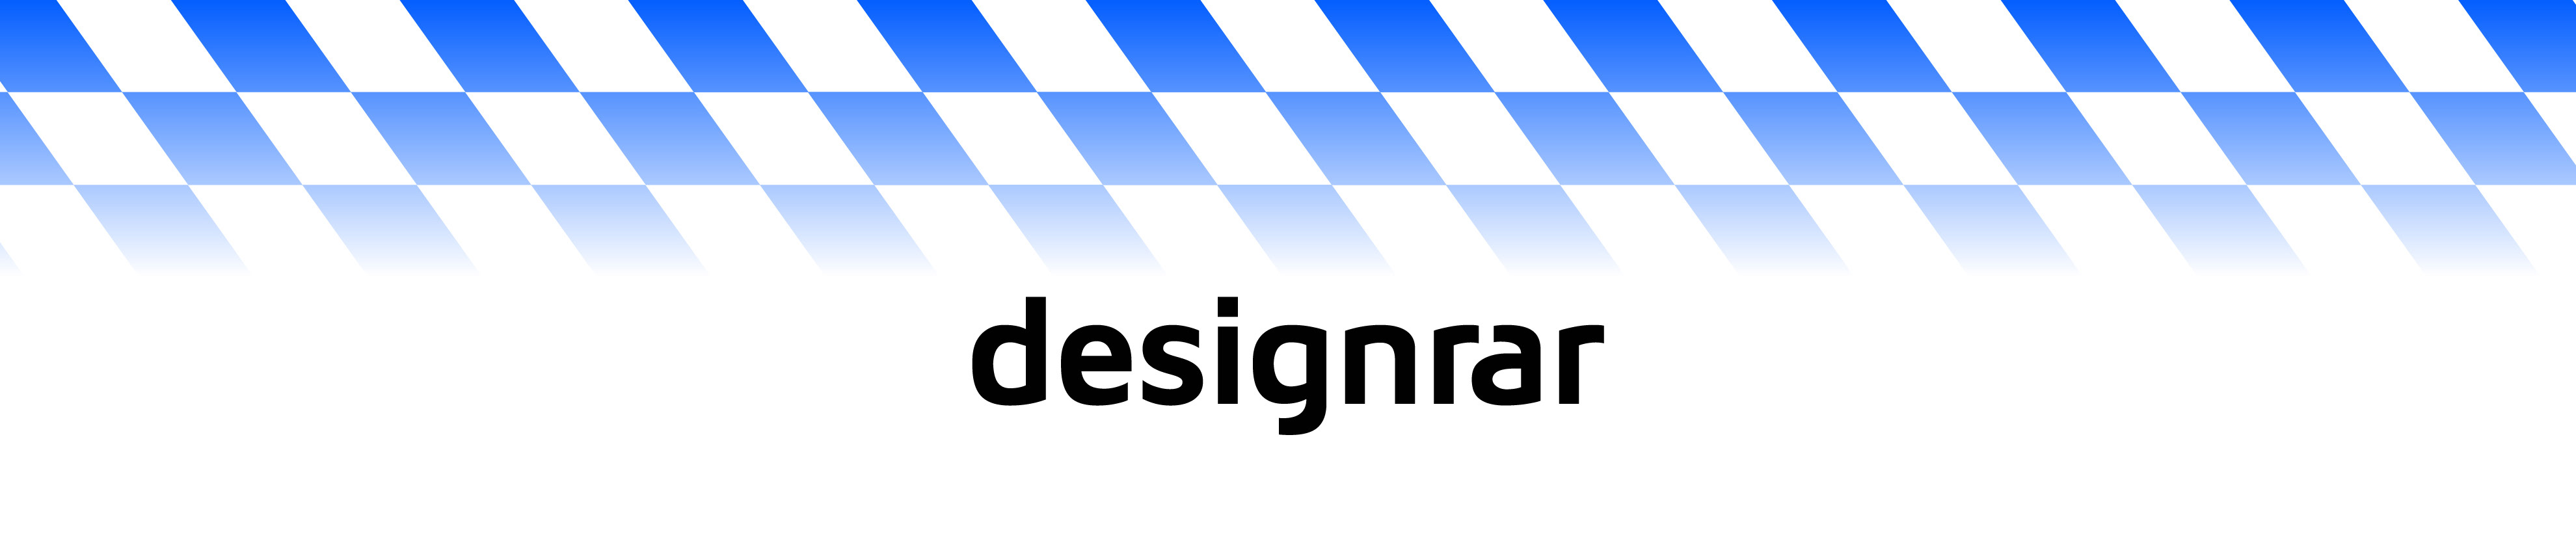 Designrar Studio's profile banner